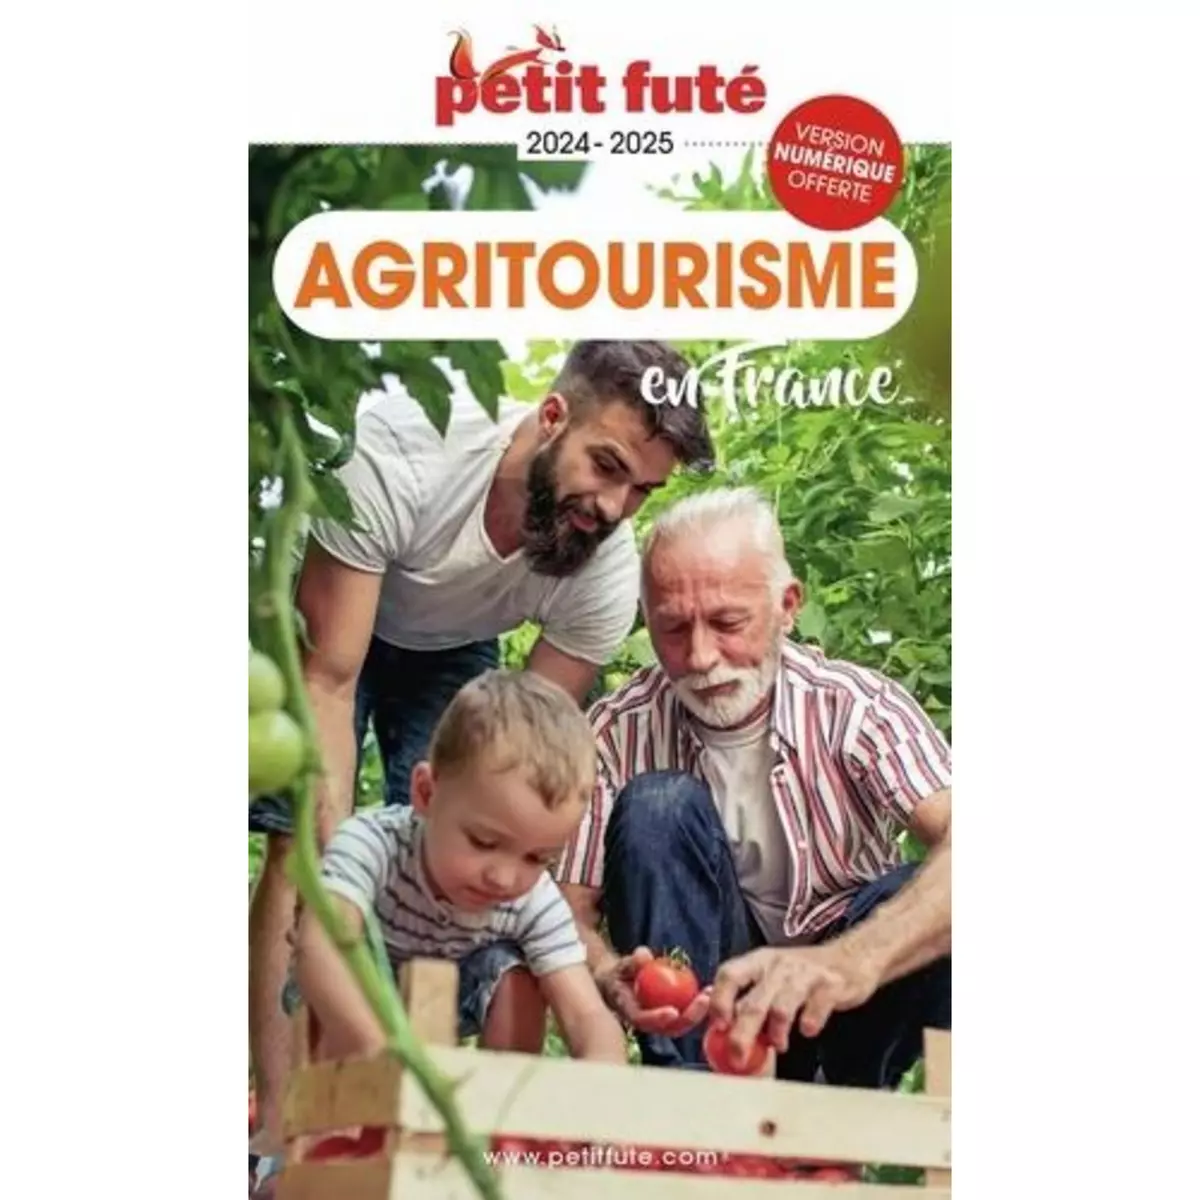  PETIT FUTE AGRITOURISME EN FRANCE. EDITION 2024-2025, Petit Futé